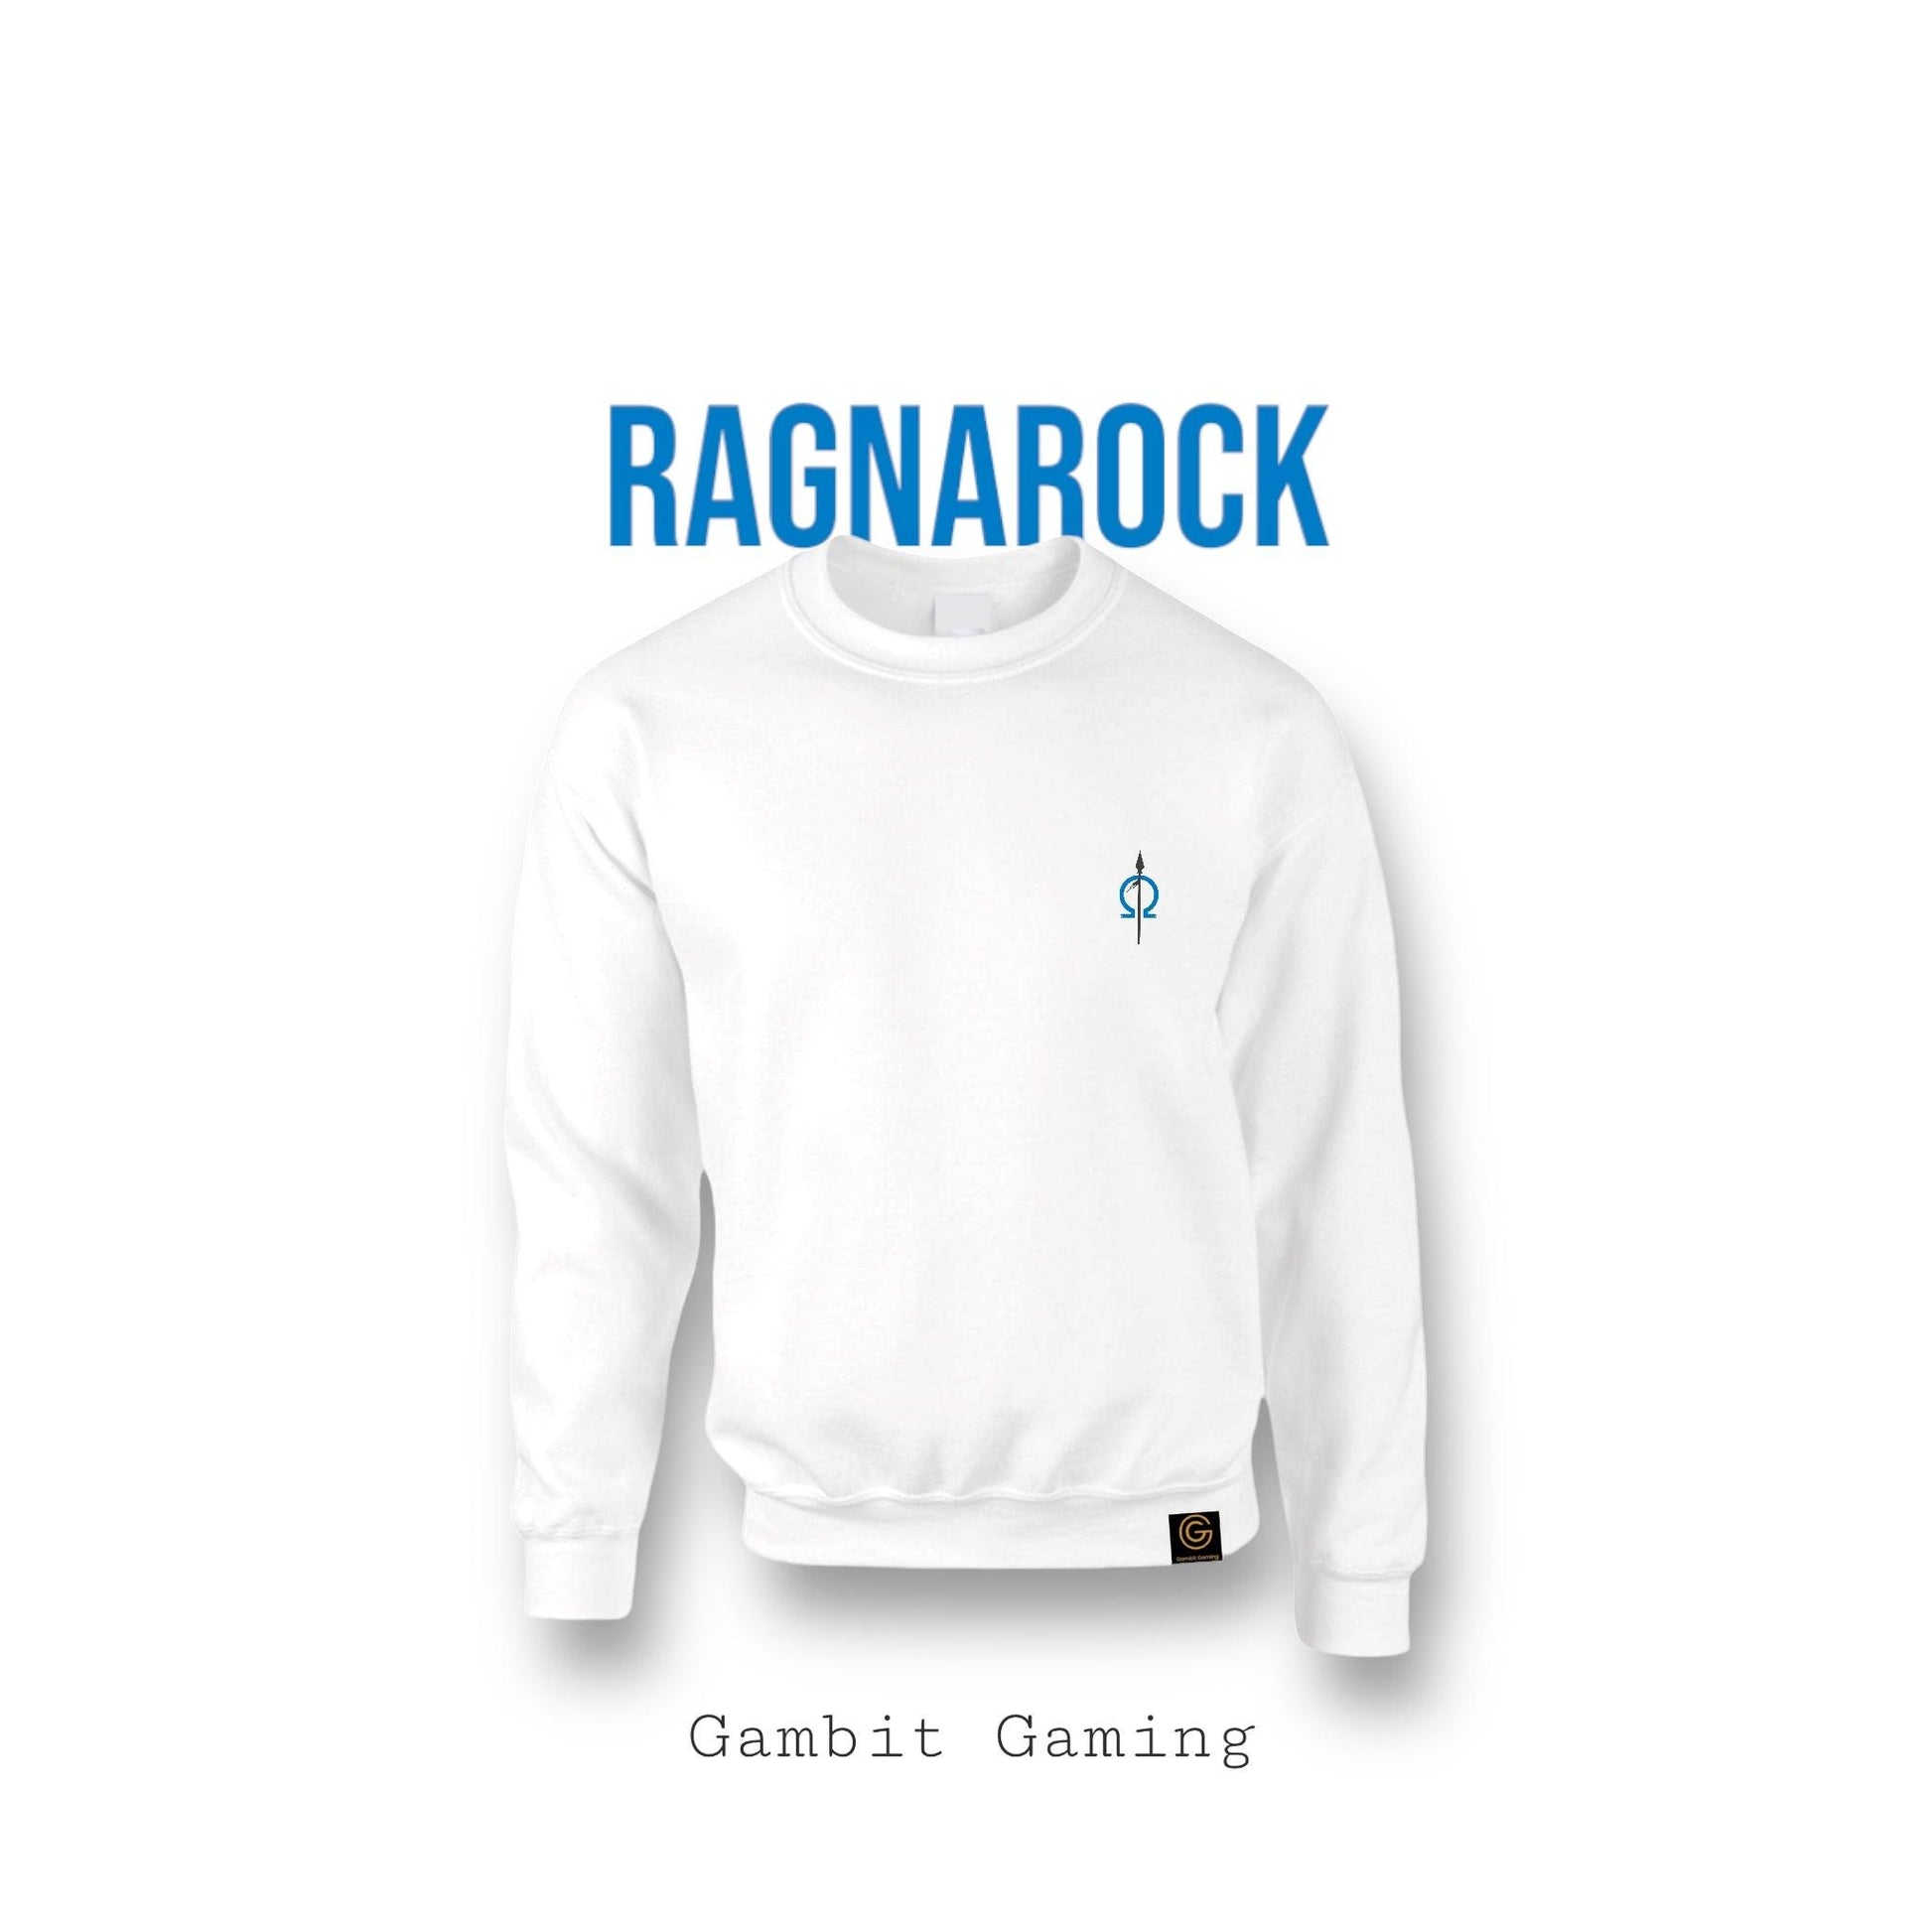 Ragnarock Sweater - Gambit Gaming